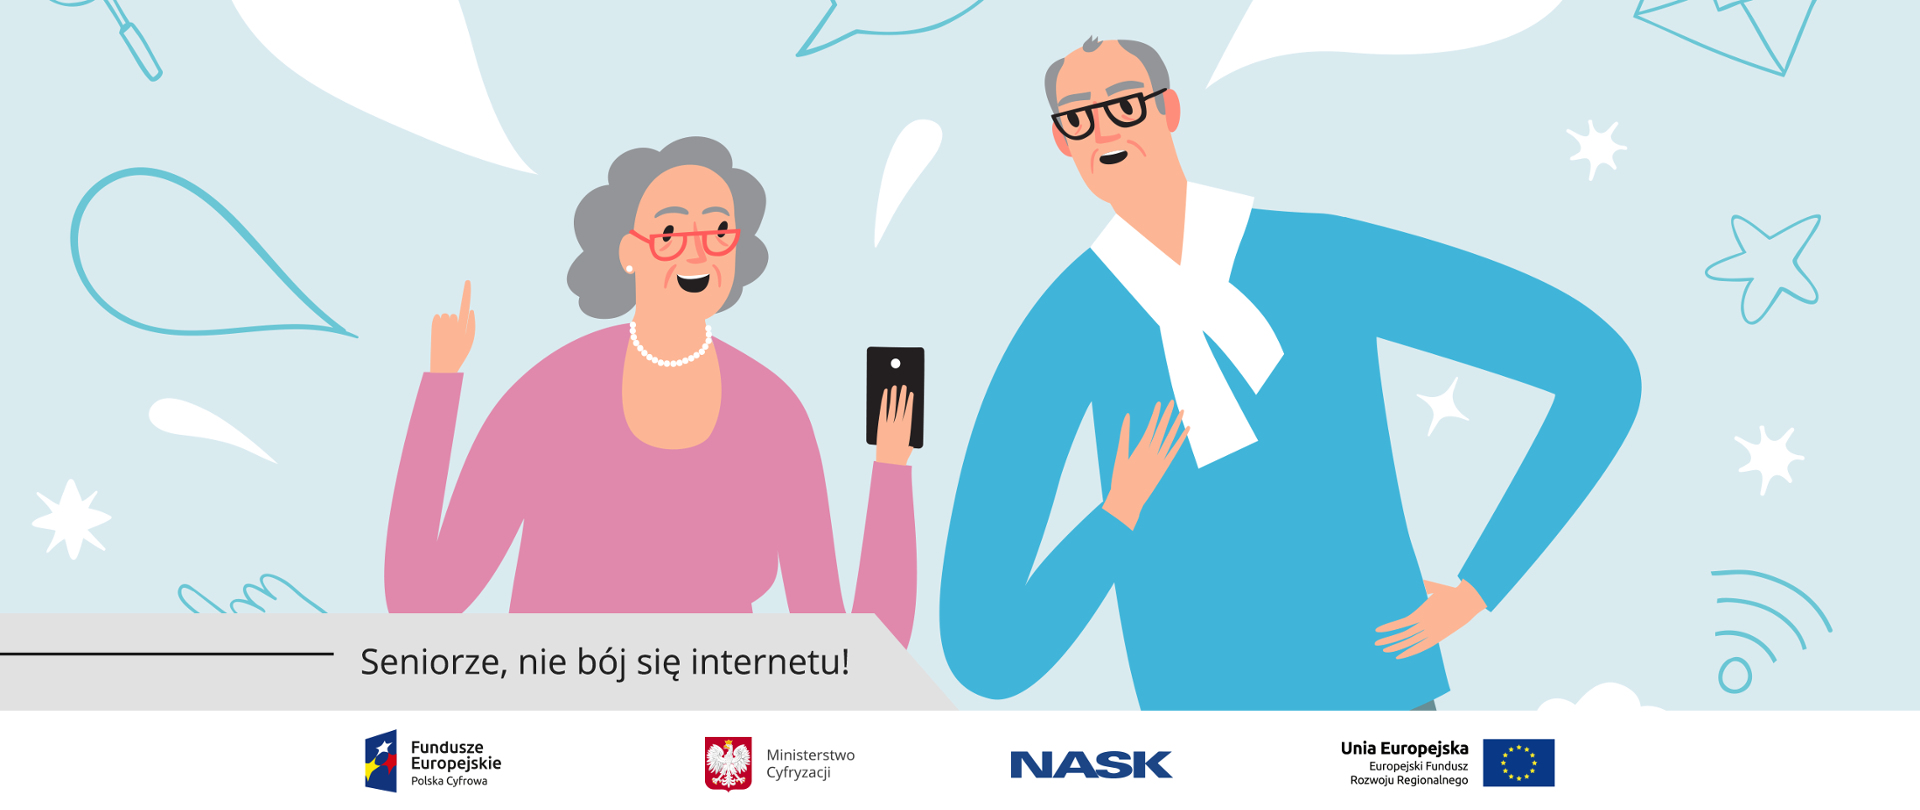 Grafika. Babcia i dziadek wpatrujący się w smartfona. Poniżej napis: Seniorze, nie bój się internetu!